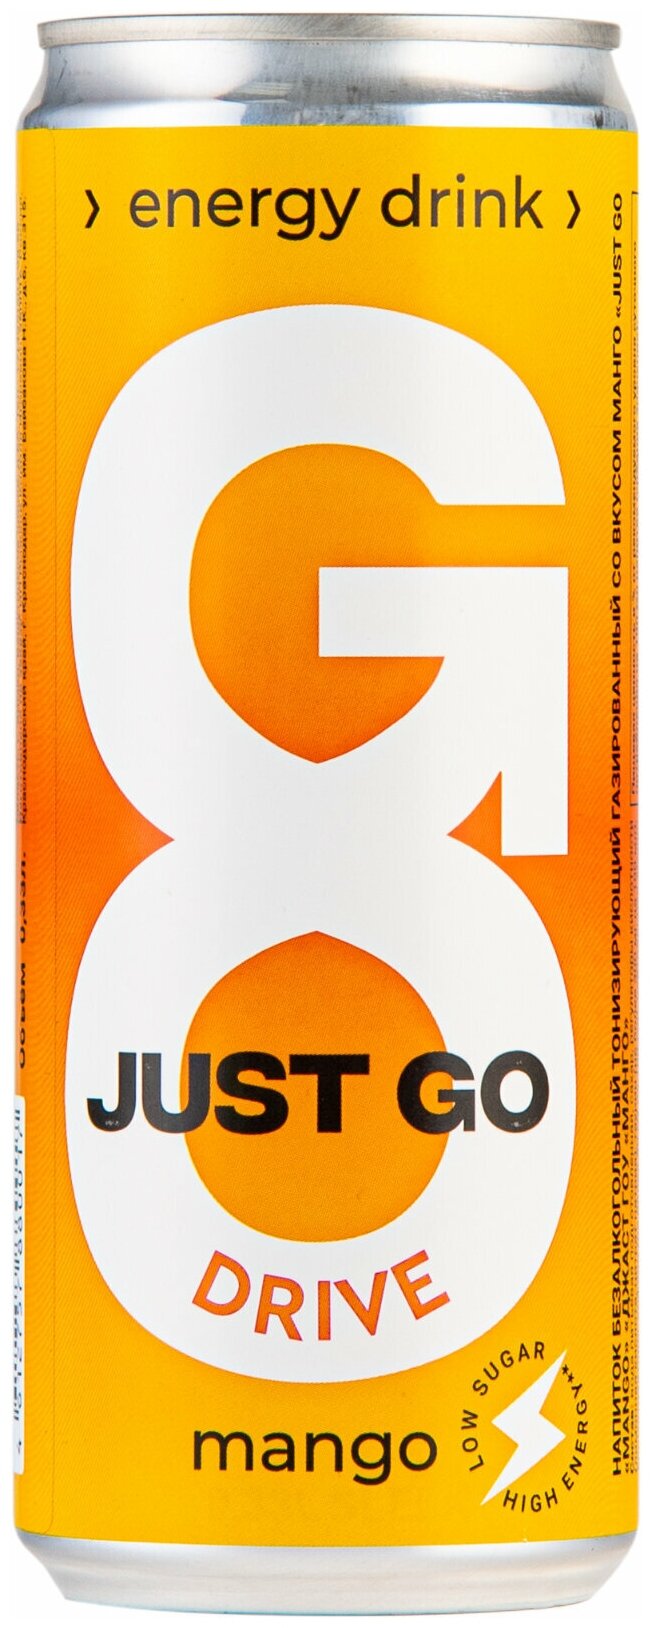 Энергетический безалкогольный напиток Just Go Drive Mango Energy Drink ("Просто иди" со вкусом манго), жестяная банка (Ж.Б.) 0,33 литра - 12 шт - фотография № 4